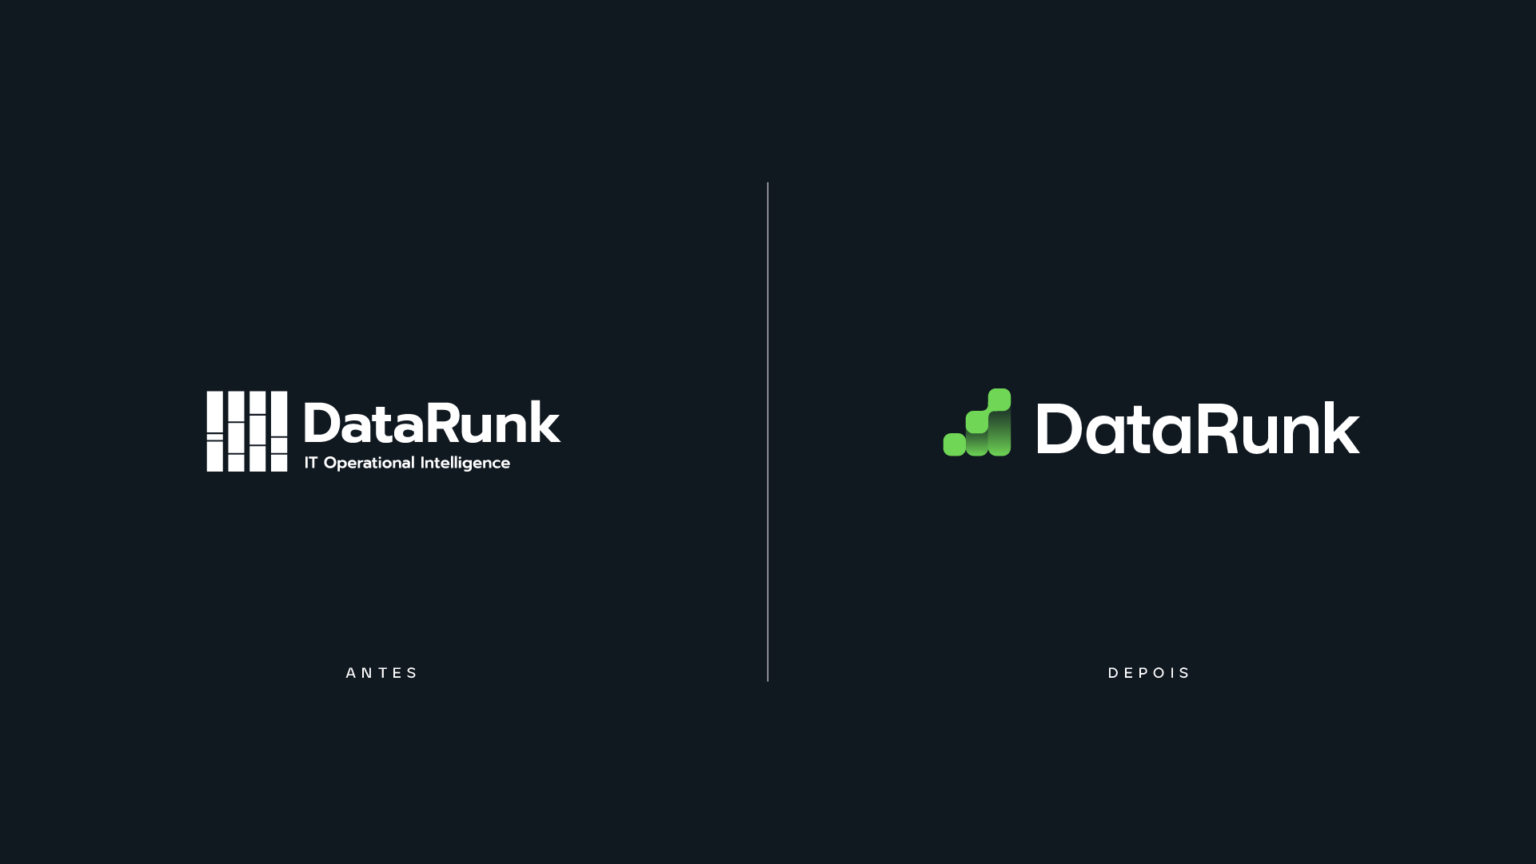 alt="Comparação entre as marcas gráficas da empresa DataRunk. Do lado esquerdo, um logo de uma única cor. Do lado direito, mantemos a ideia de uma ilustração que remete a um gráfico, mas alterando para o verde e com outra forma."